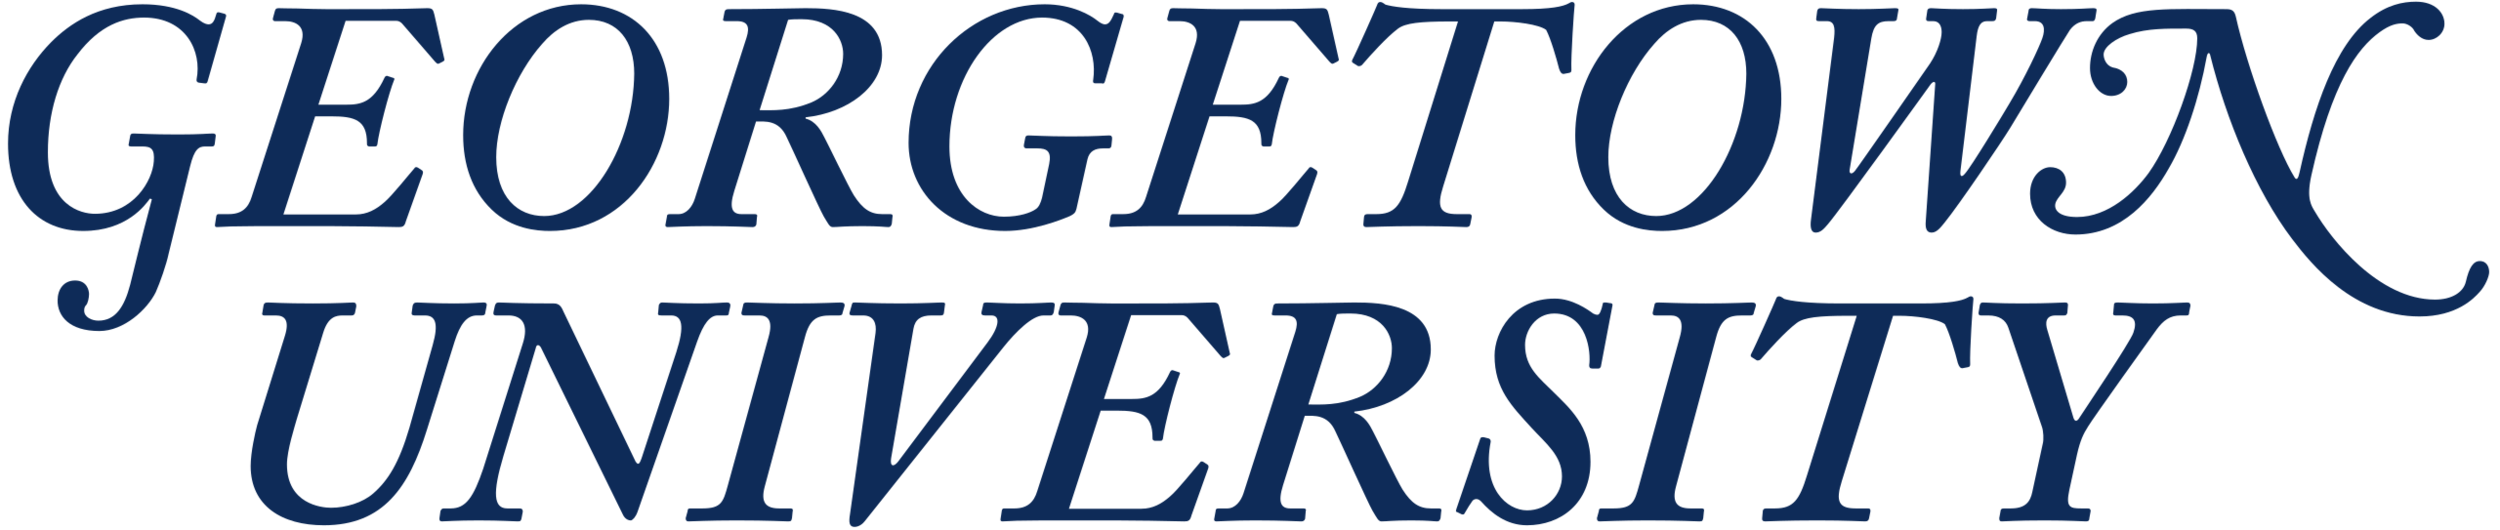 Georgetown logo.png